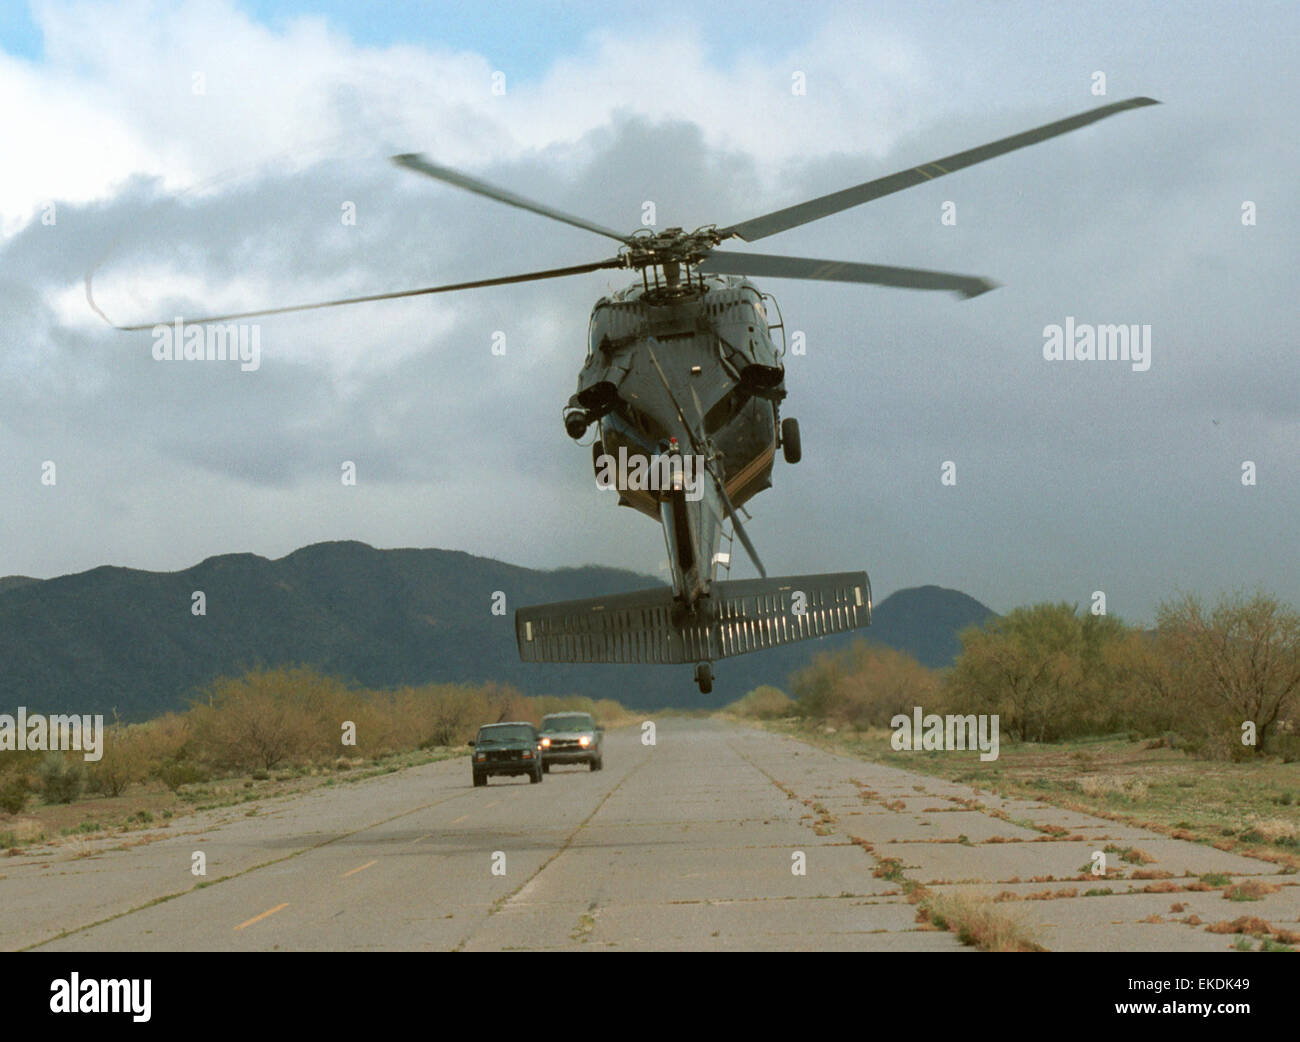 Una CBP scatola aria UH-60 Blackhawk elicottero intimidates due veicoli su un telecomando striscia di aria in America sudoccidentale della regione di confine. James Tourtellotte Foto Stock